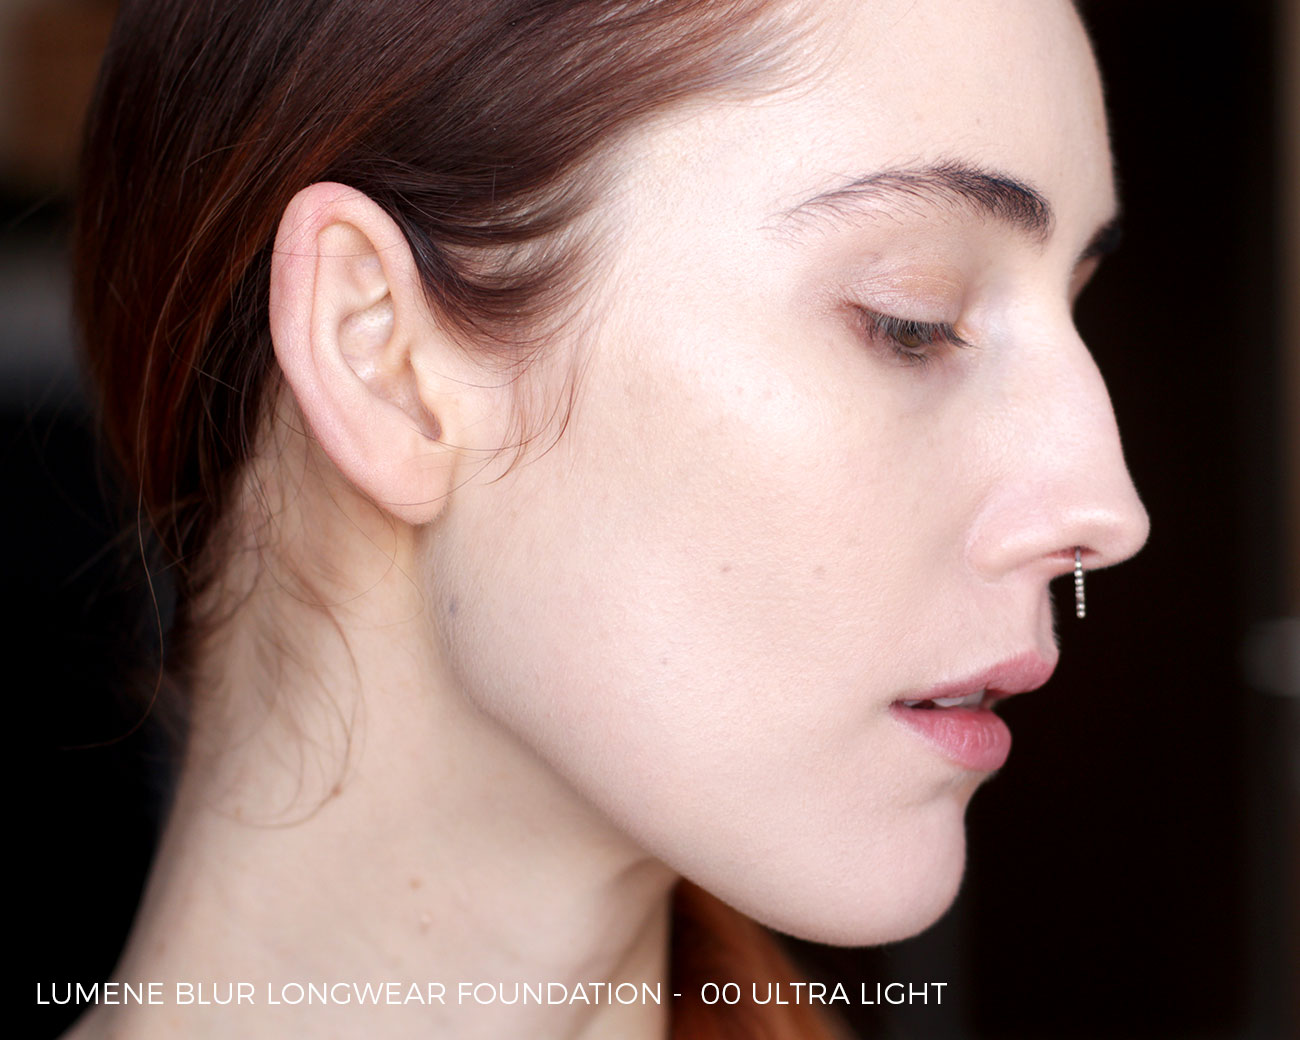 Lumene Blur Longwear Foundation 00 Ultra Light